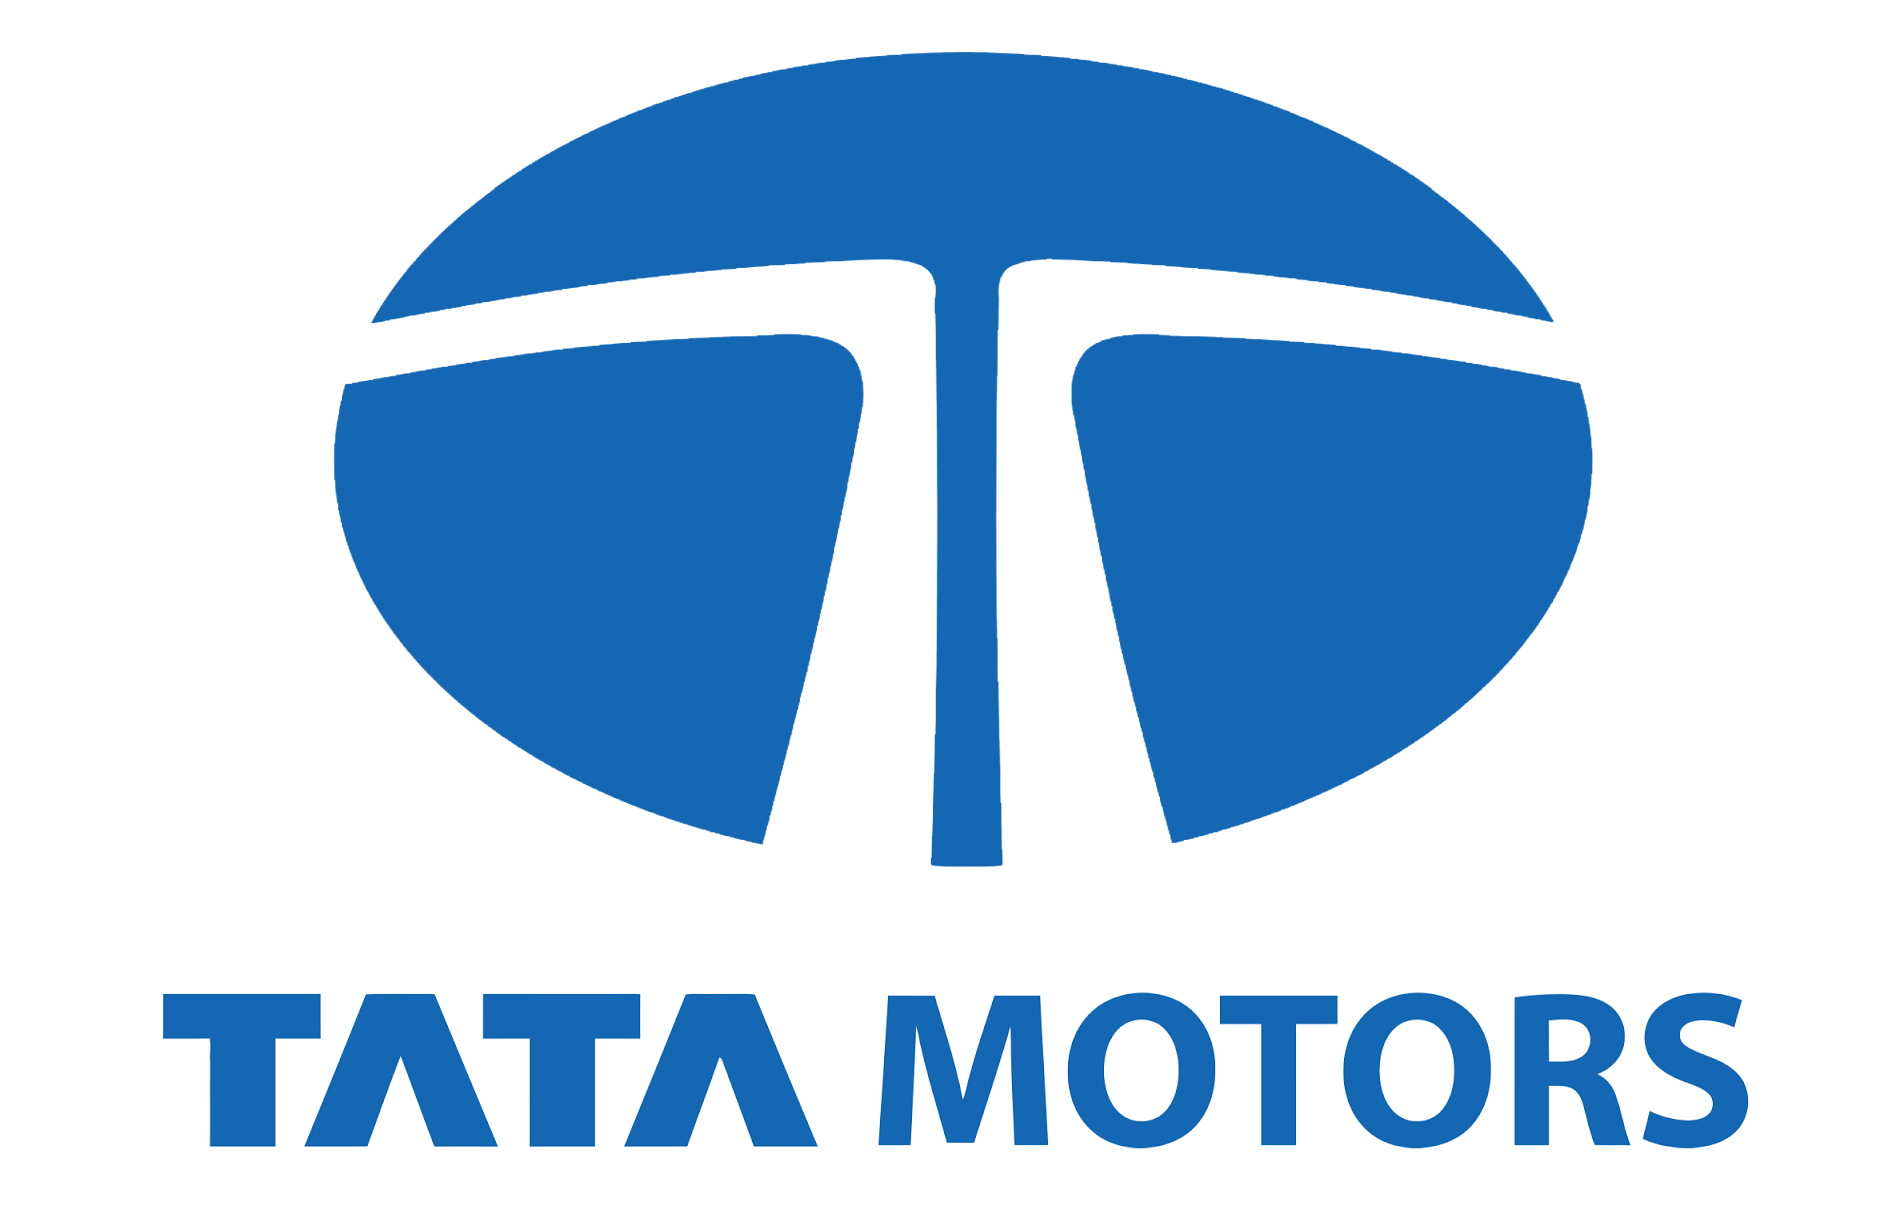 Tata Motors Cars Showroom - Key Motors|Show Room|Automotive